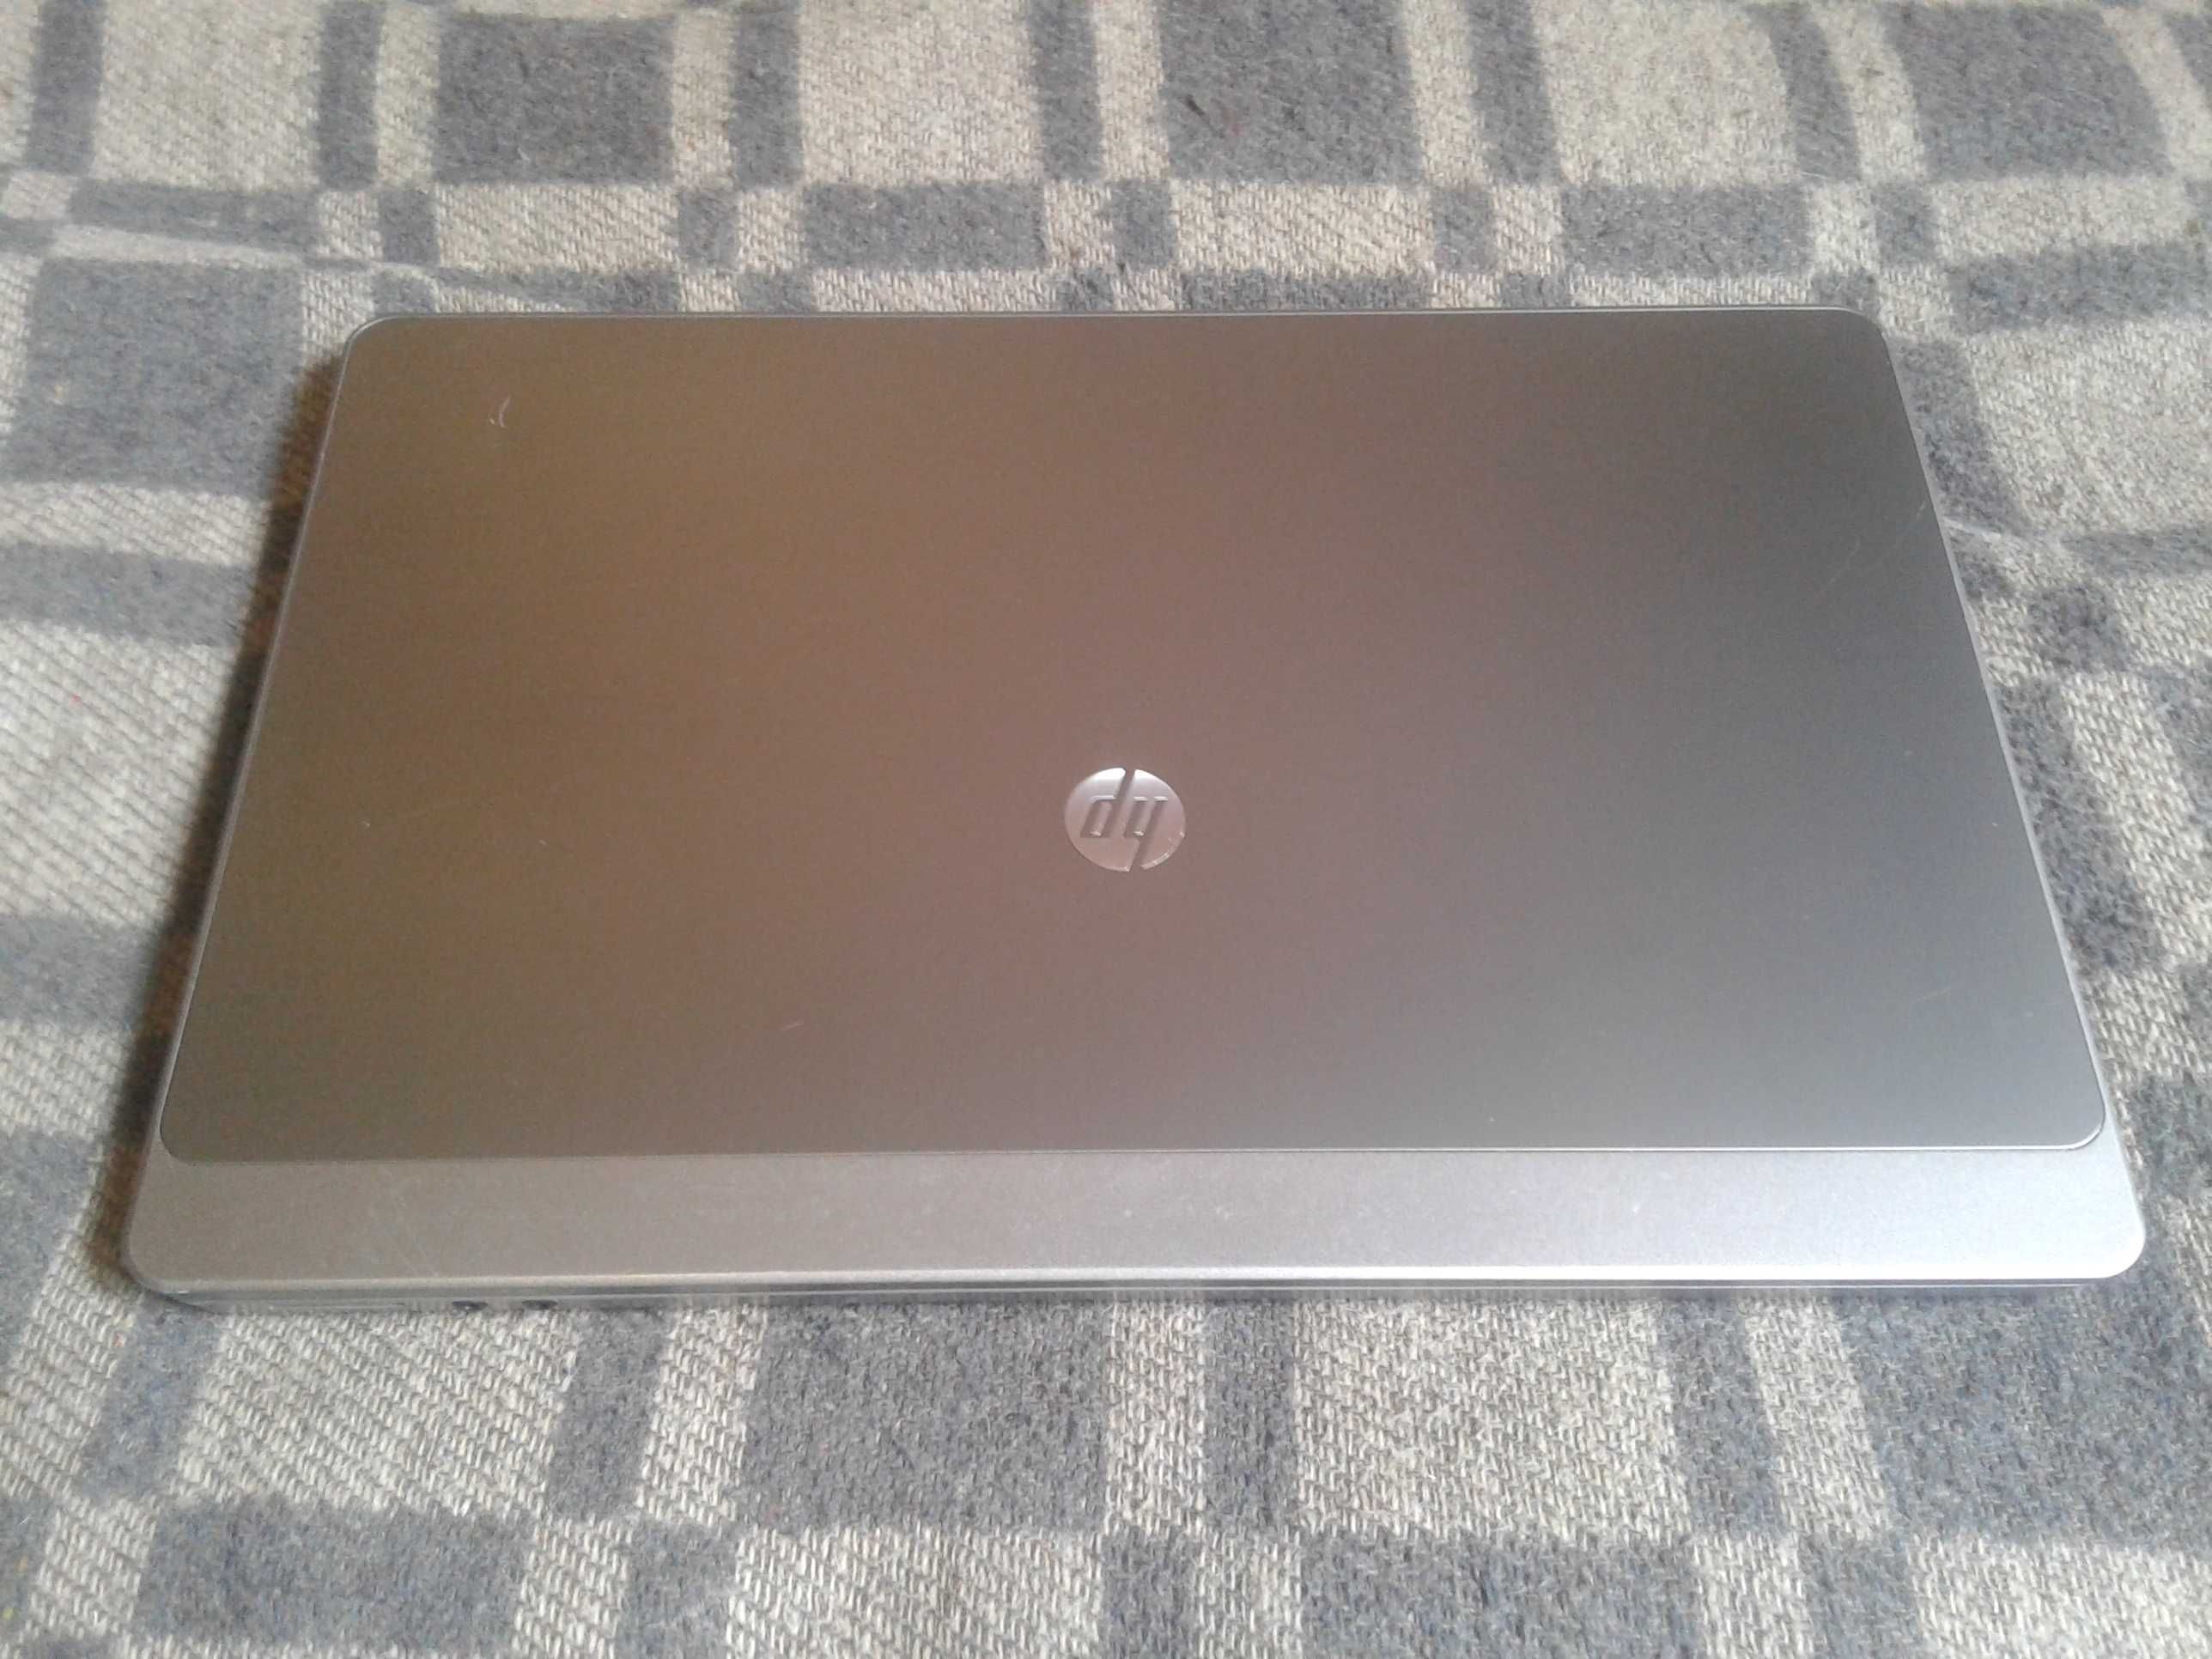 Ноутбук HP 4530s на Core i5